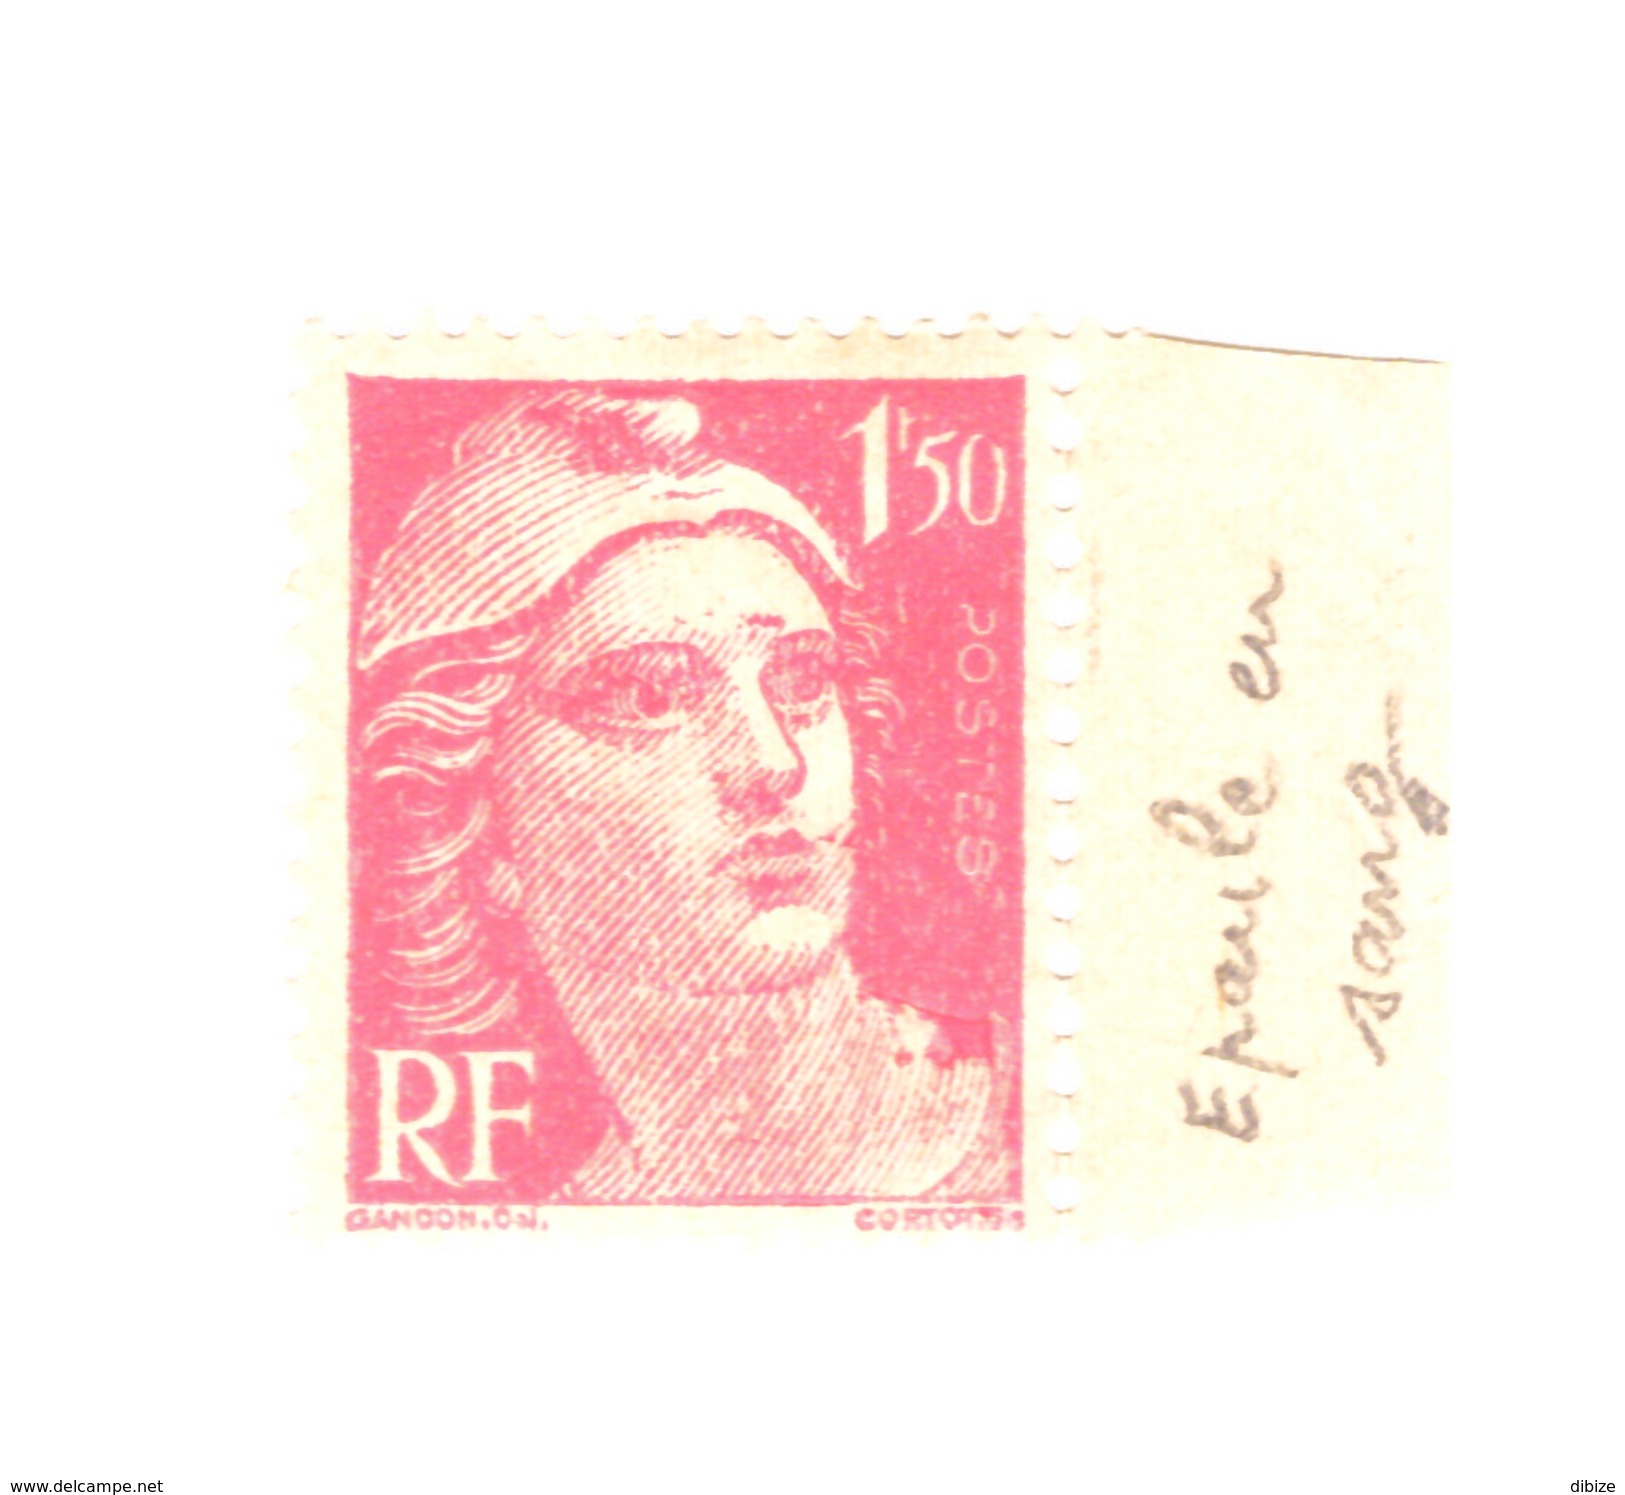 Timbre France Marianne N° 712 De 1945-1947. Défaut : Epaule En Sang. Variété. - Oddities On Stamps